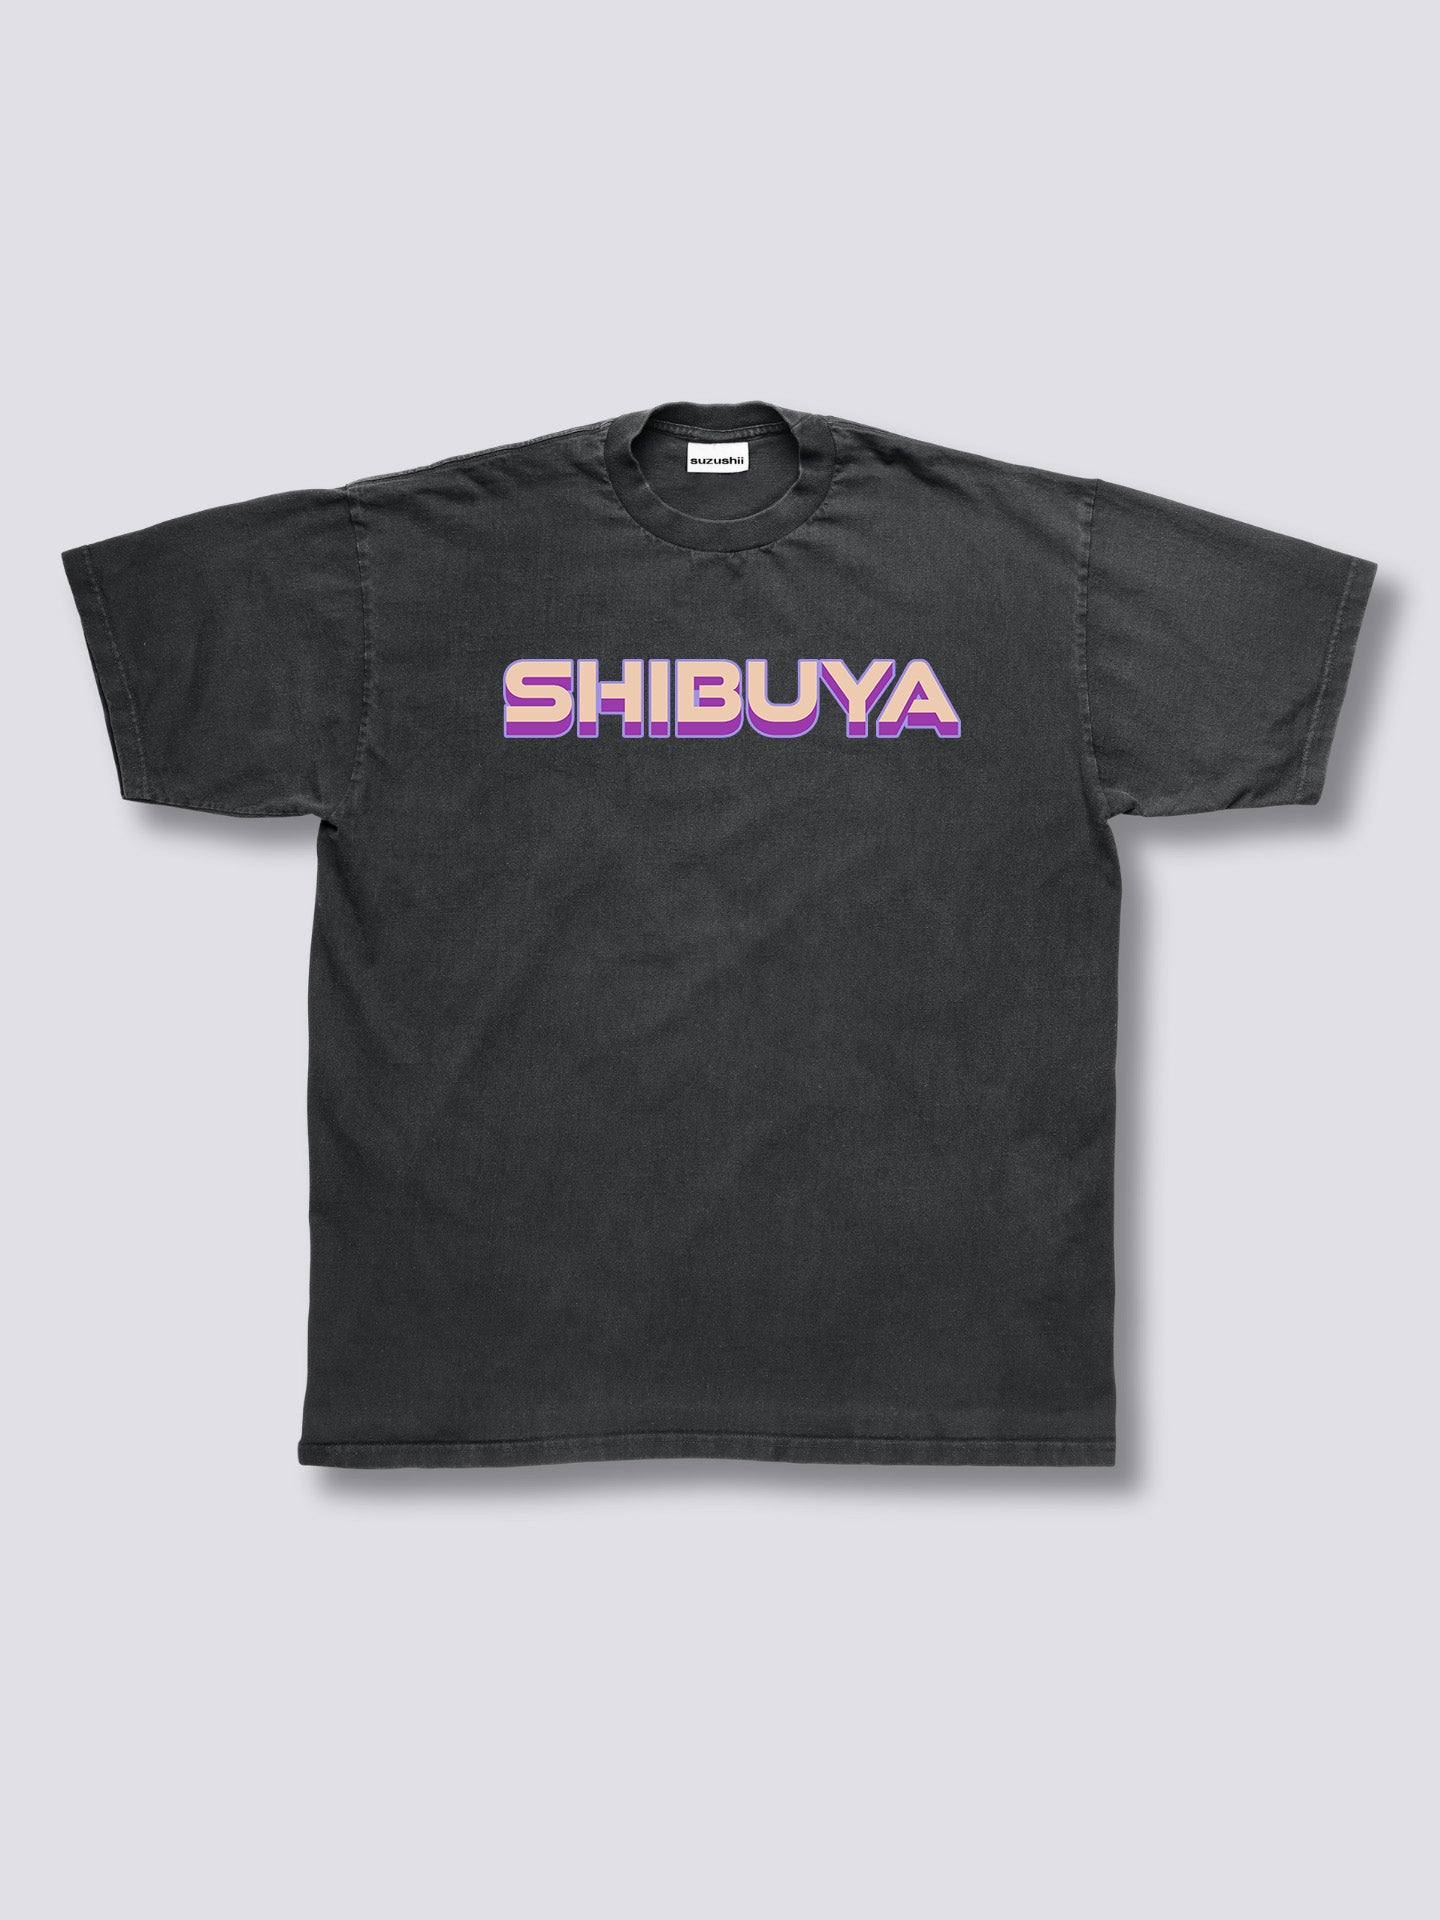 Shibuya Vintage T-Shirt